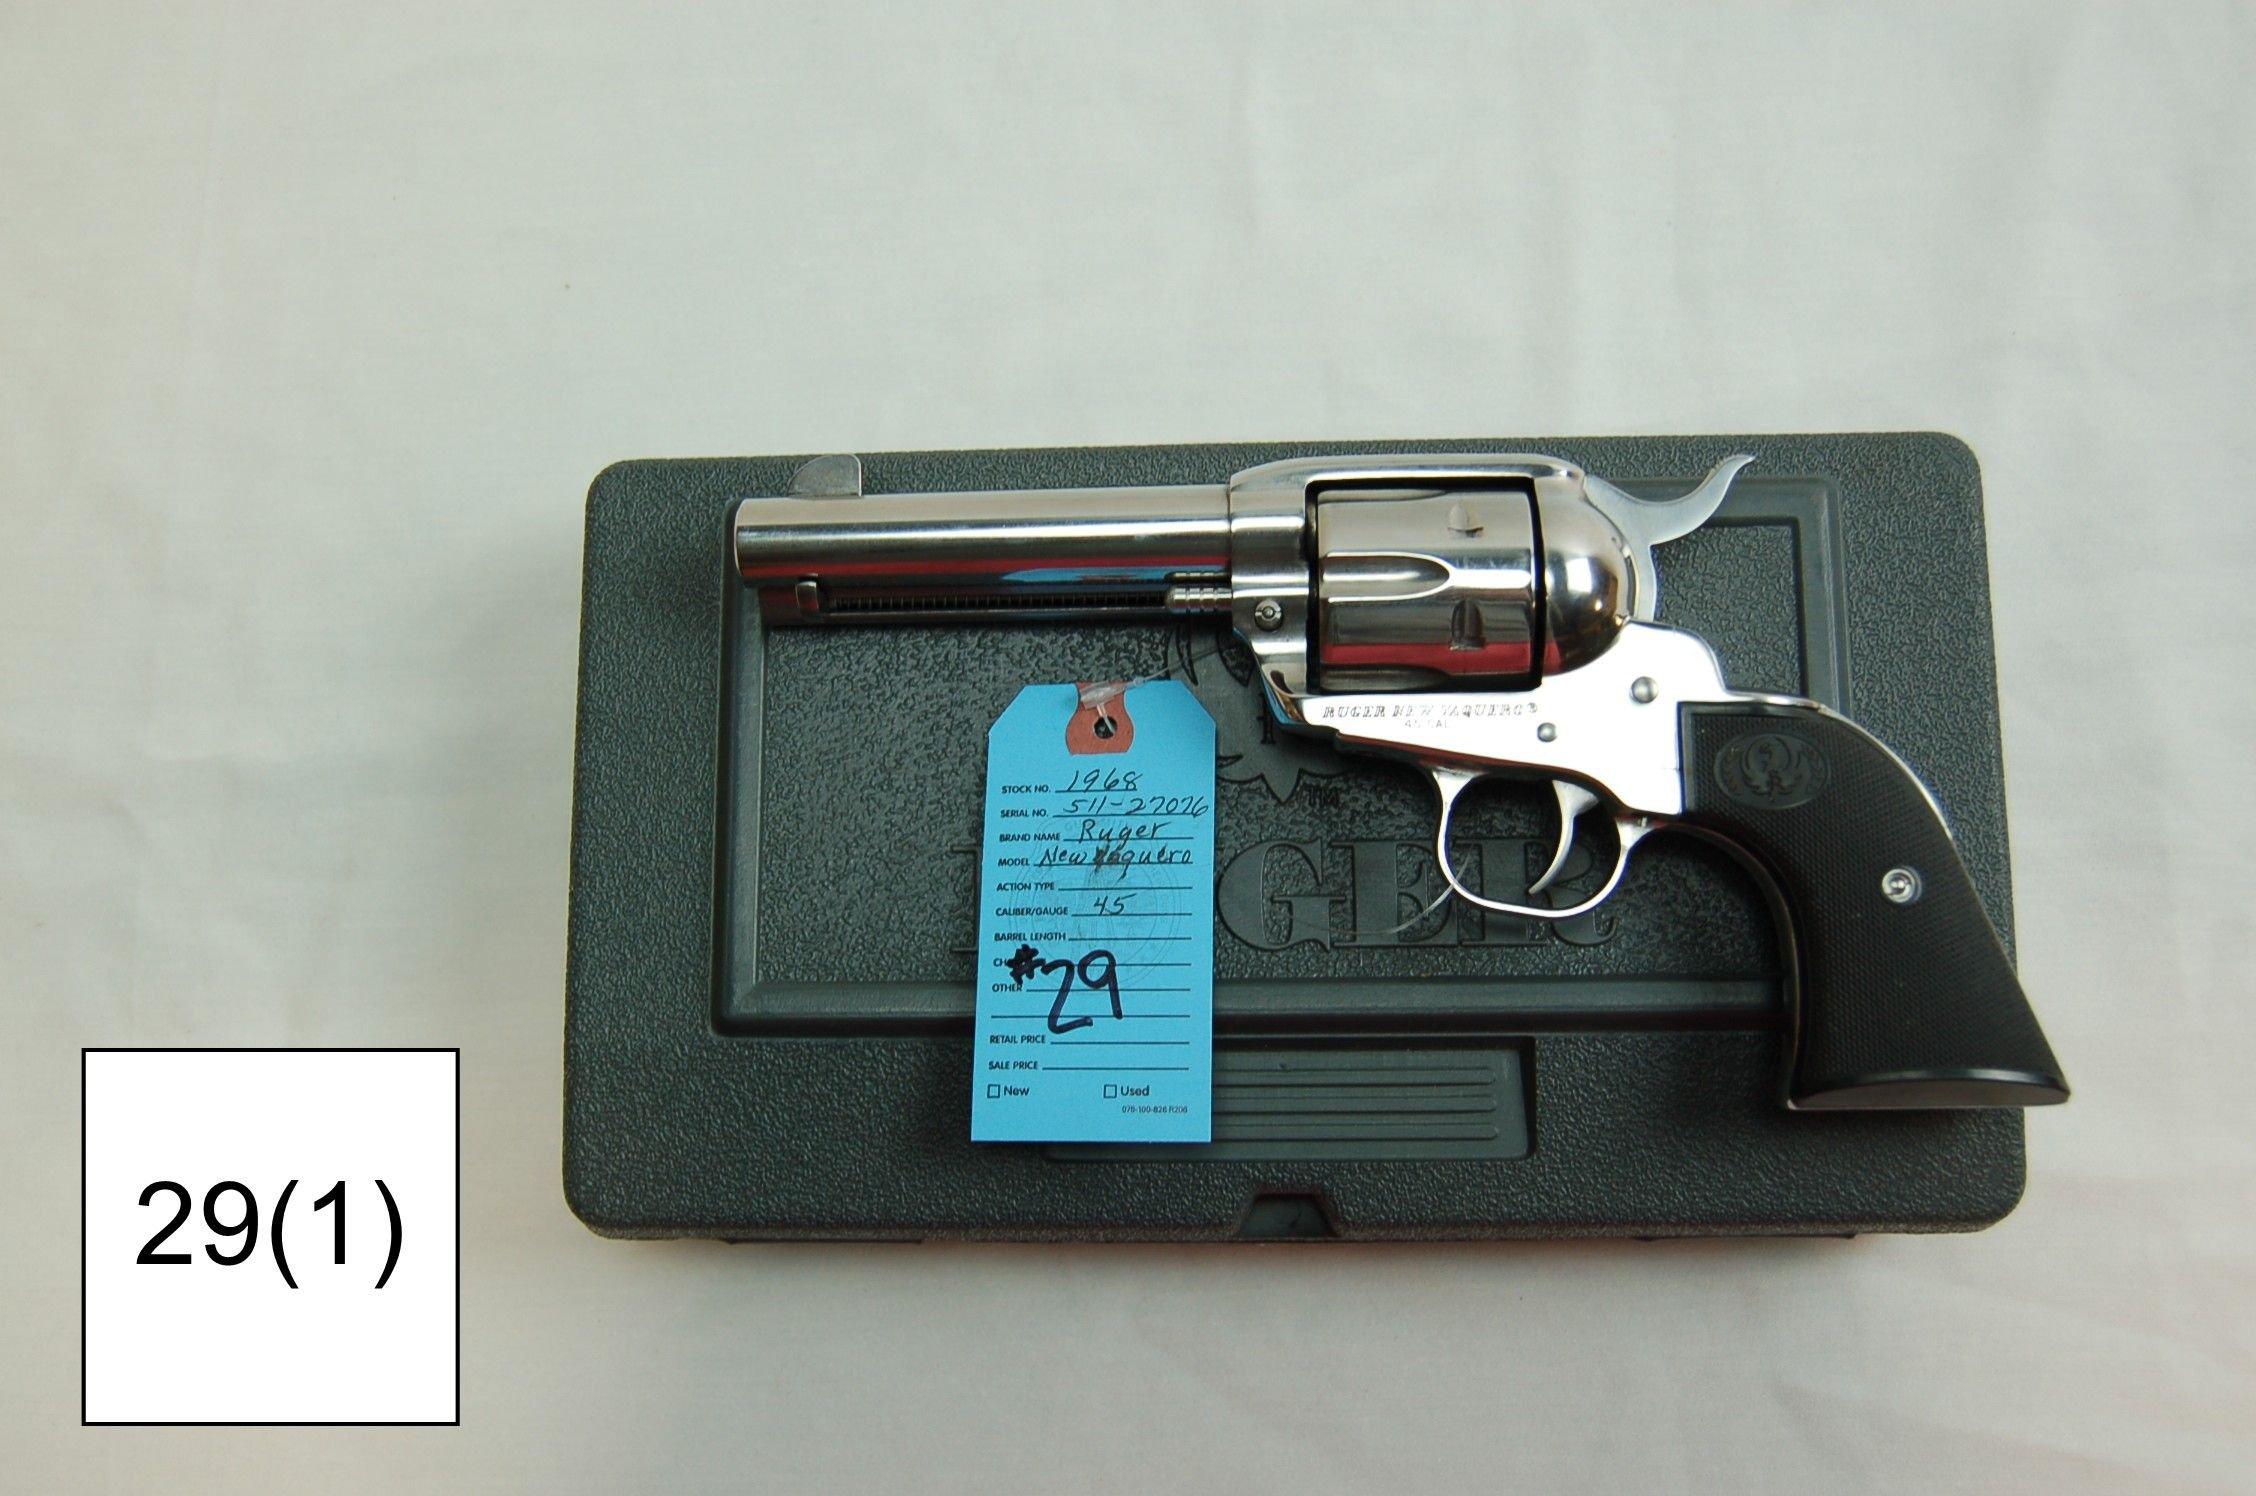 Ruger    New Vaquero    Cal .45 Colt    4½” Condition: Like NIB